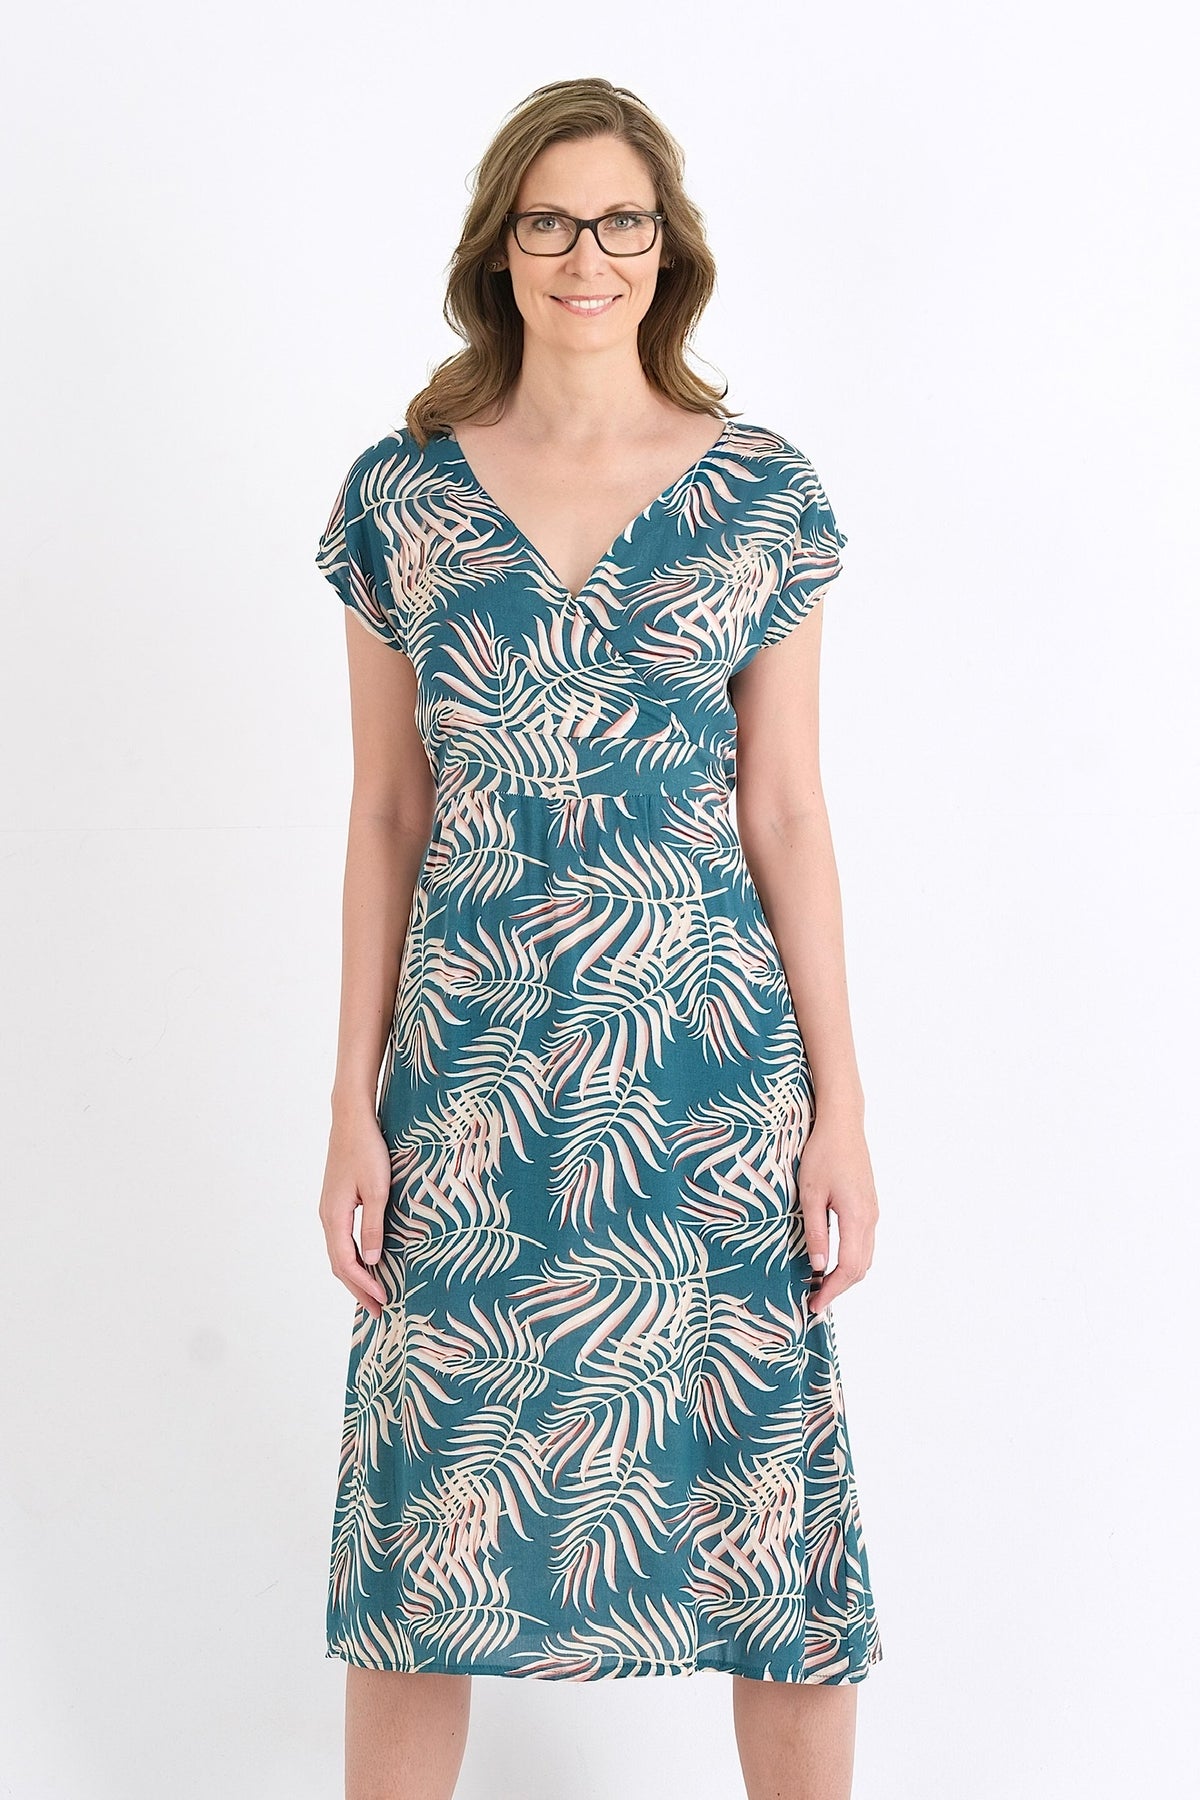 Explorez notre collection avec cette robe en viscose fluide, disponible pour les femmes au Québec. Achetez en ligne et choisissez parmi les tailles XS à XXL pour allier confort et style chic cet été.